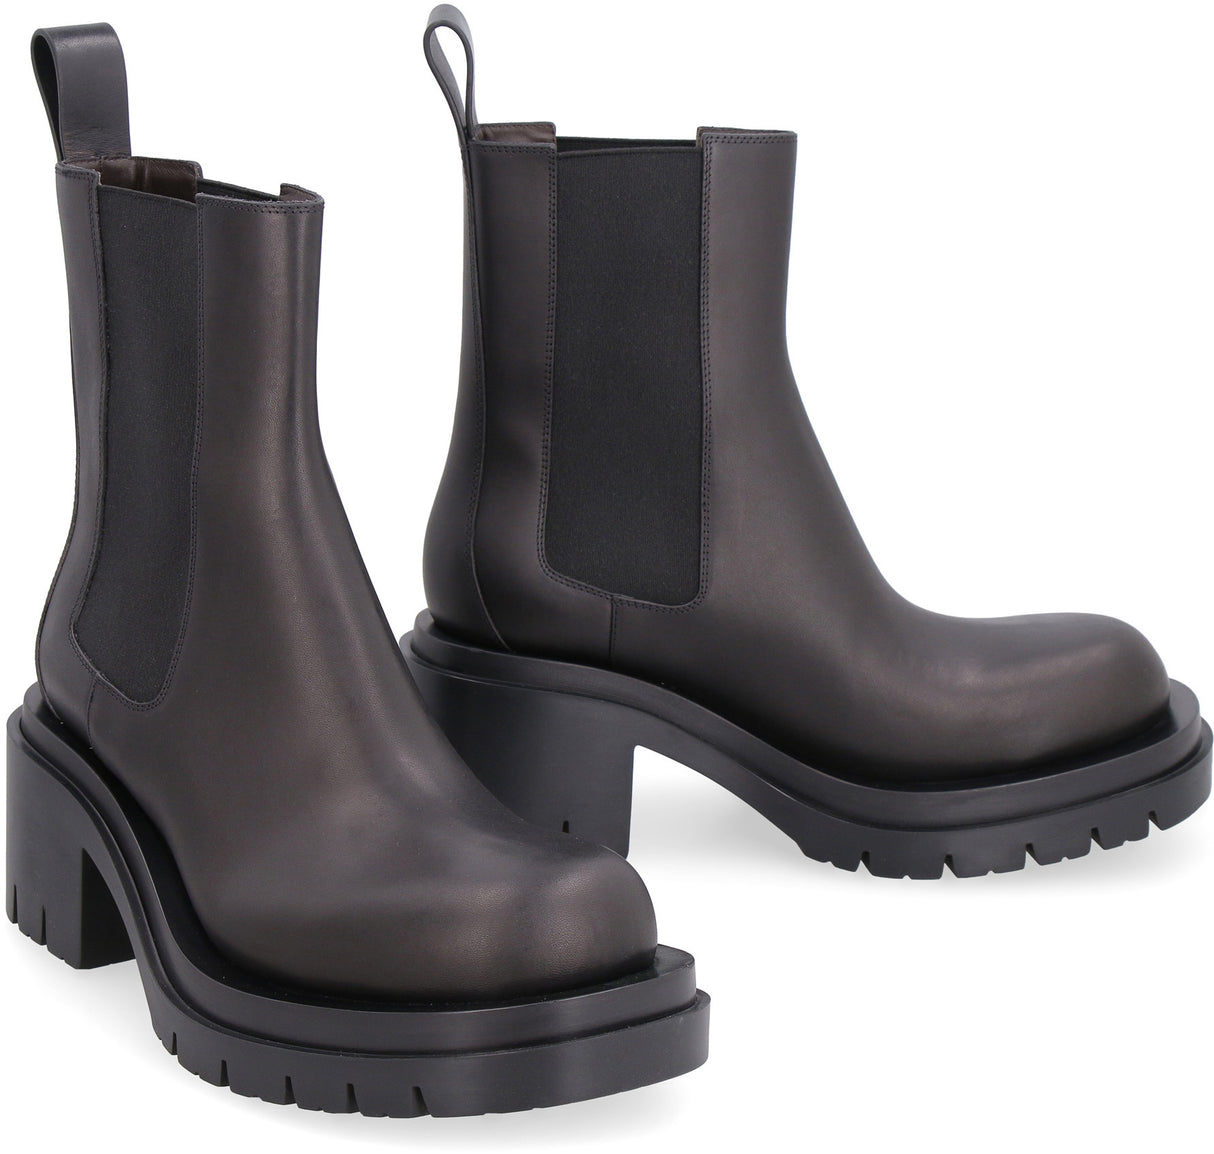 Dép Leather Boot đen cho nữ - Bộ sưu tập Thu Đông 2021